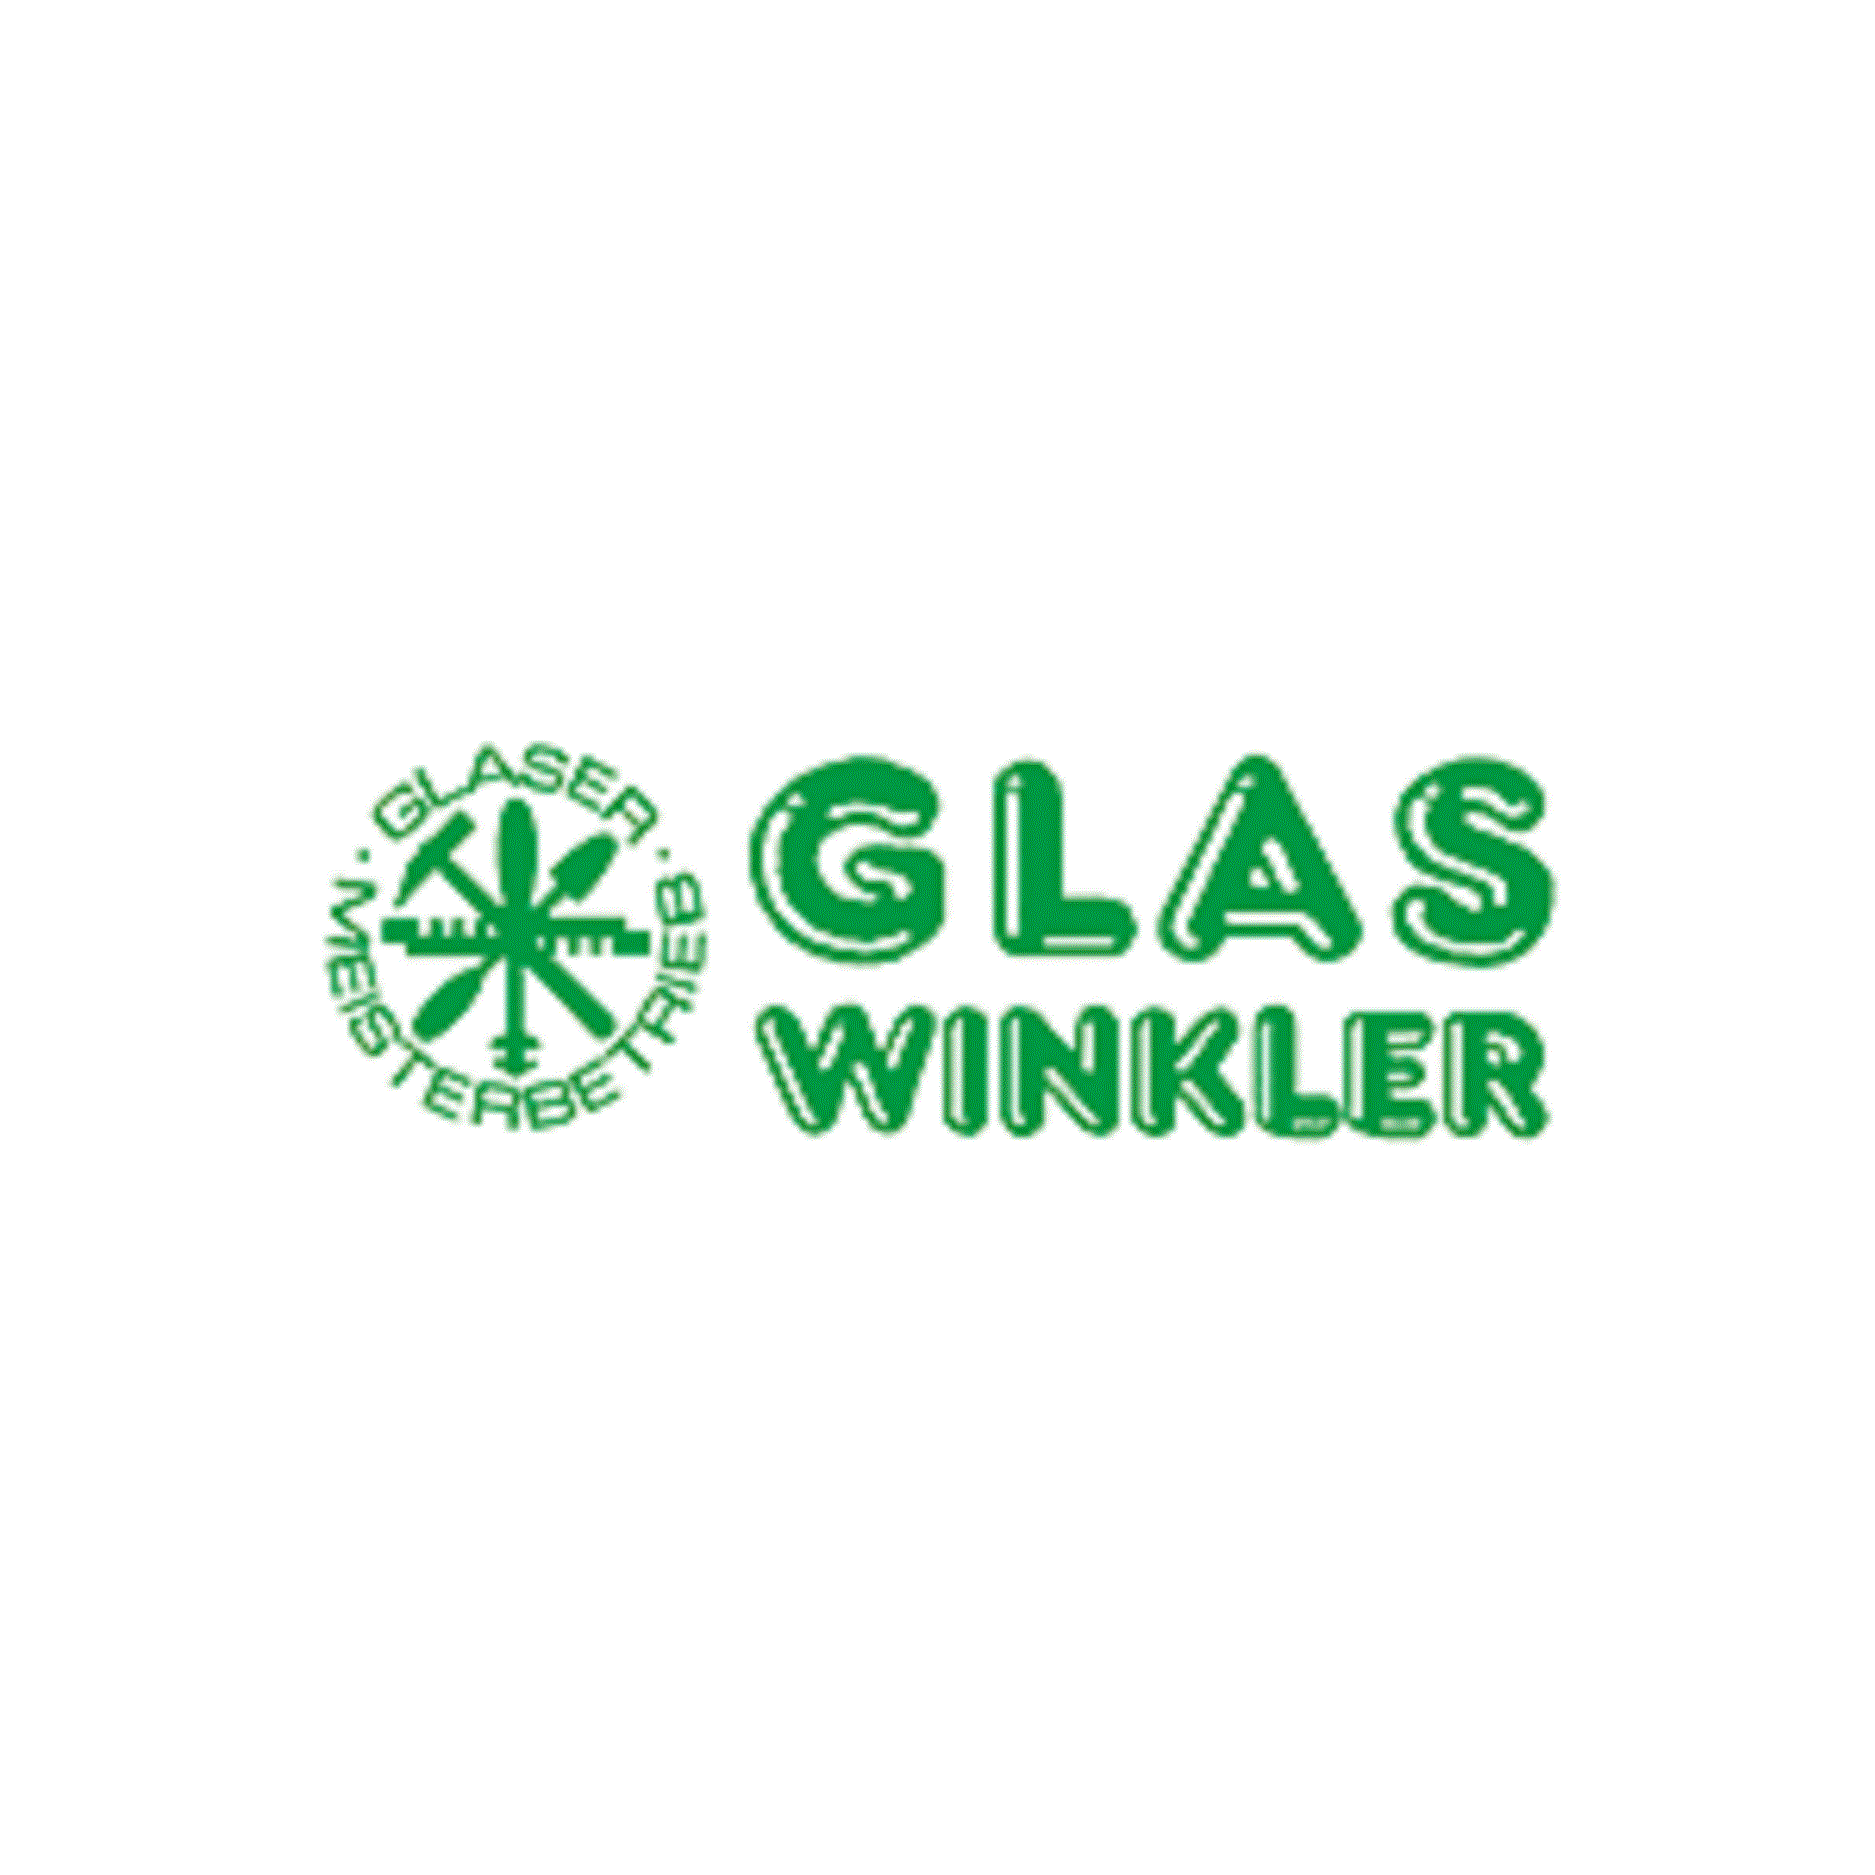 Glas Winkler in 9523 Landskron Logo